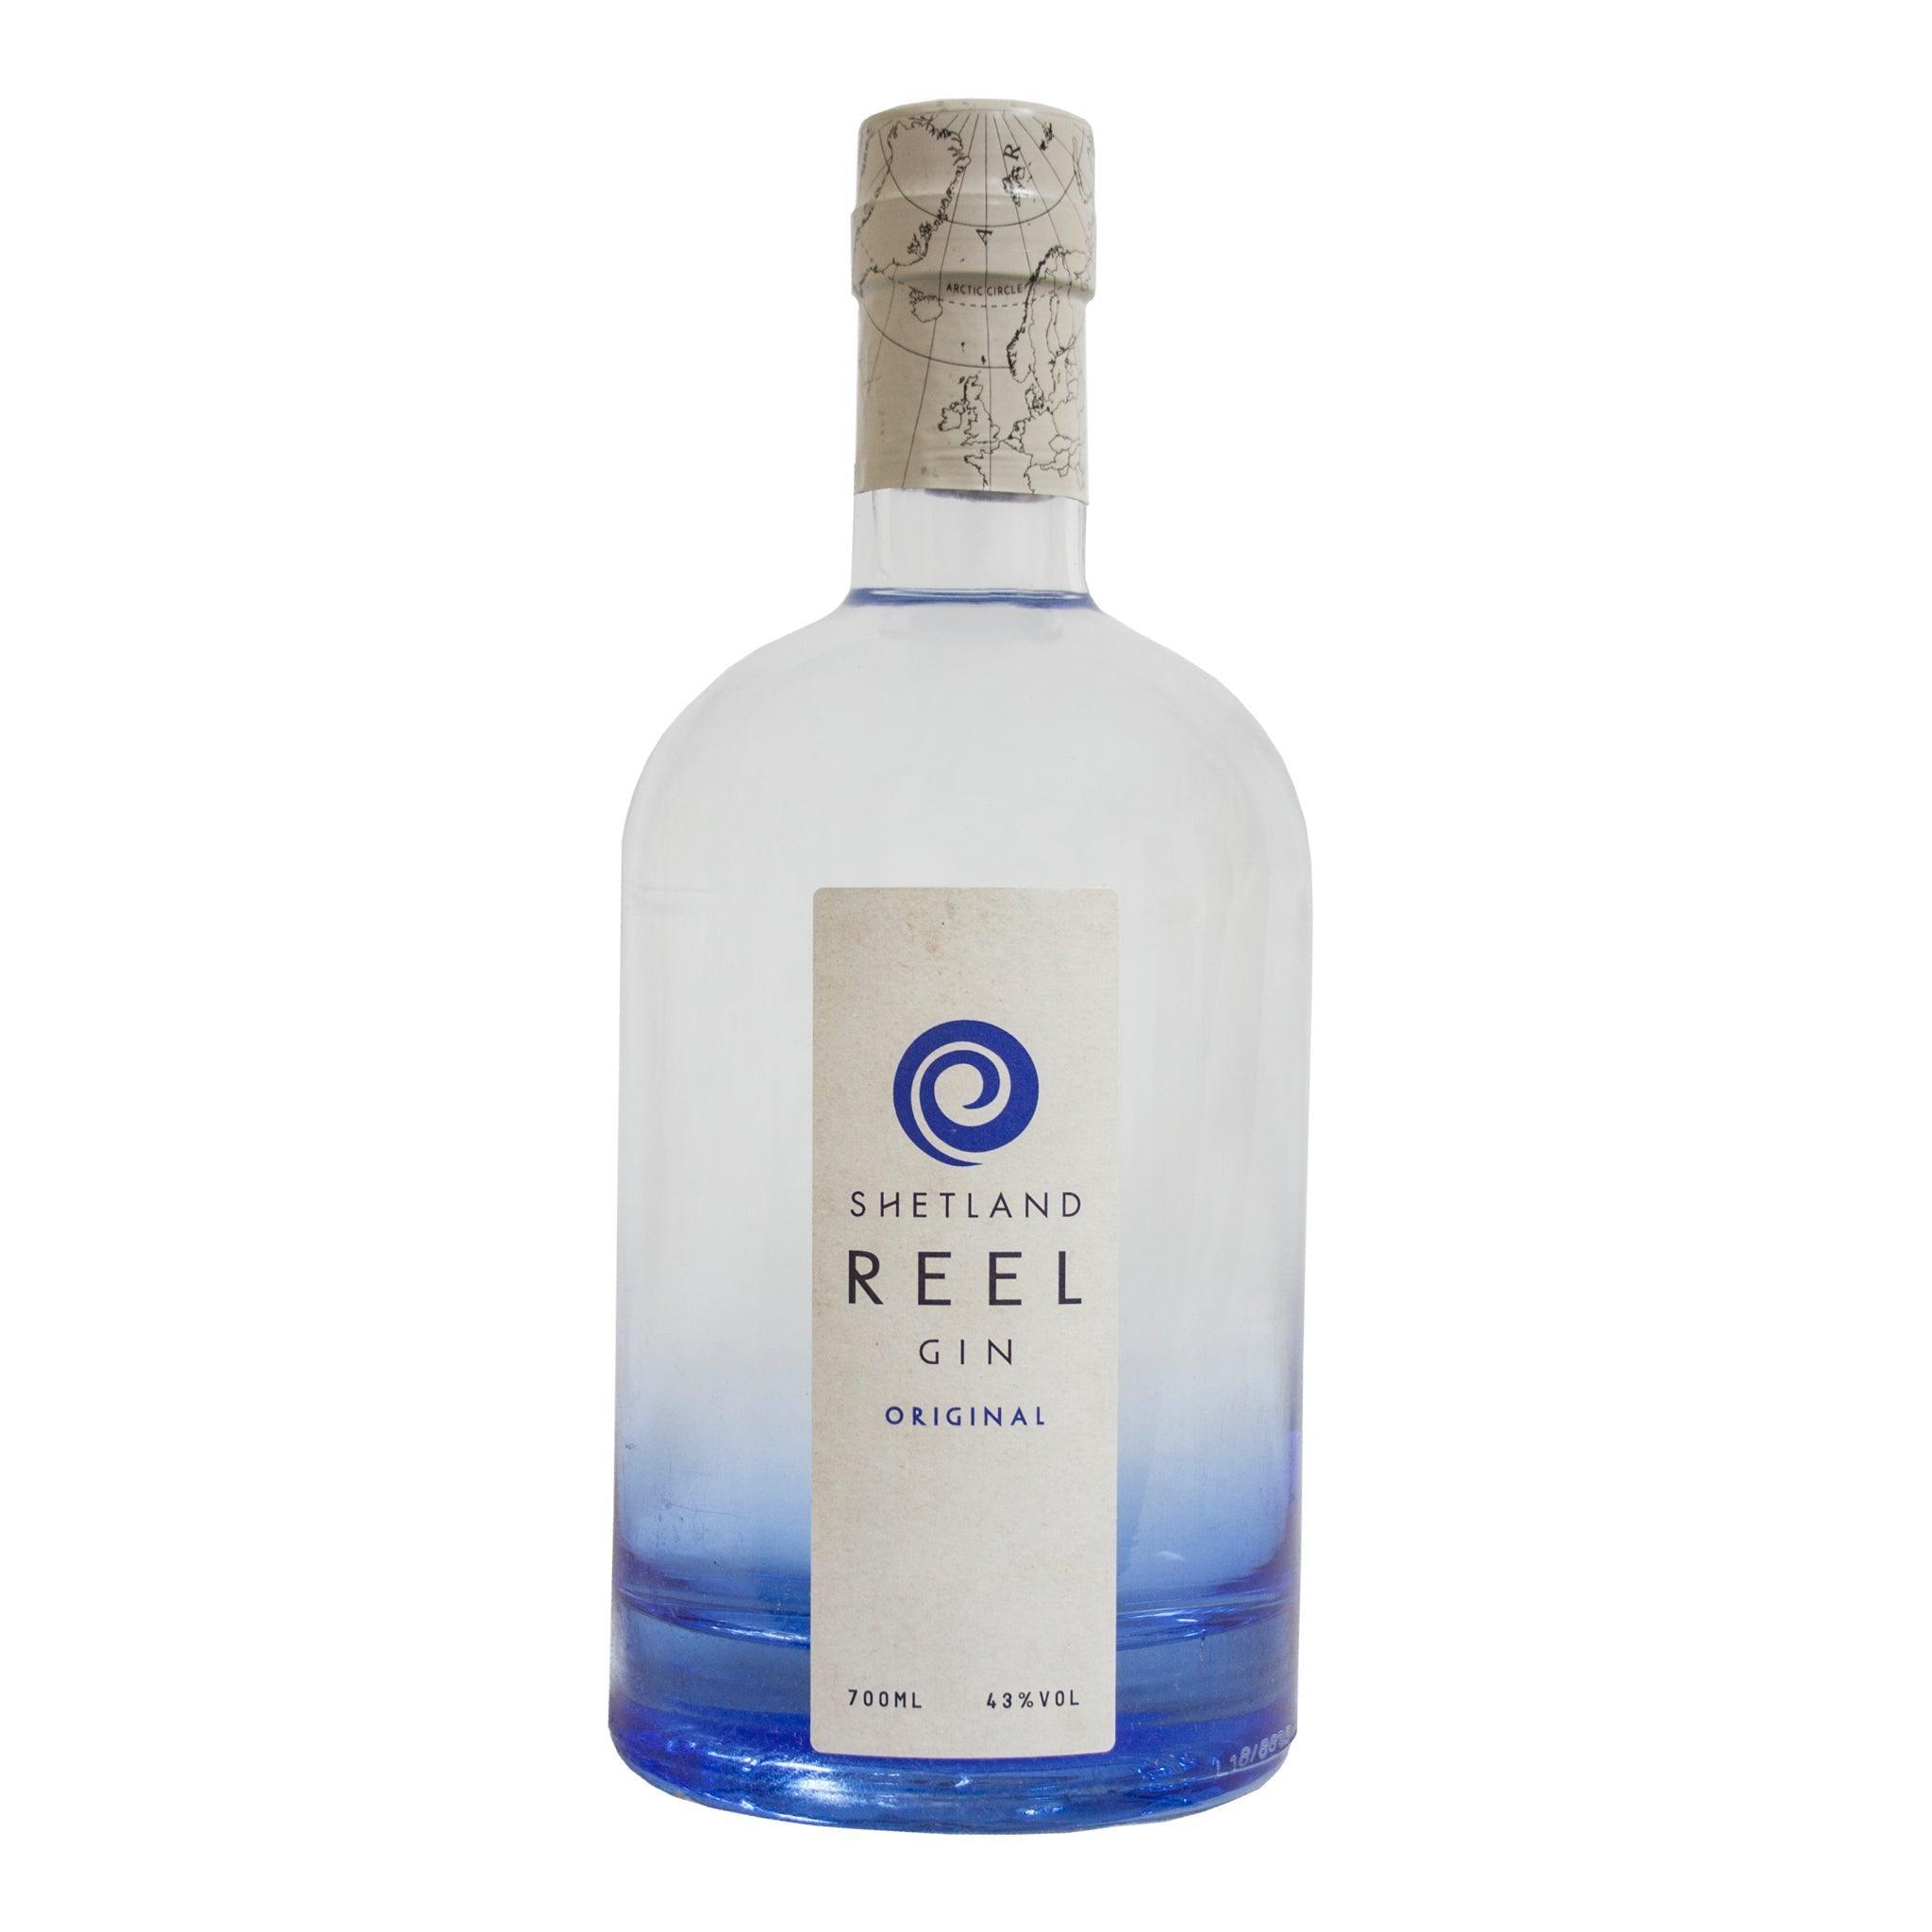 Shetland Reel Gin, Original